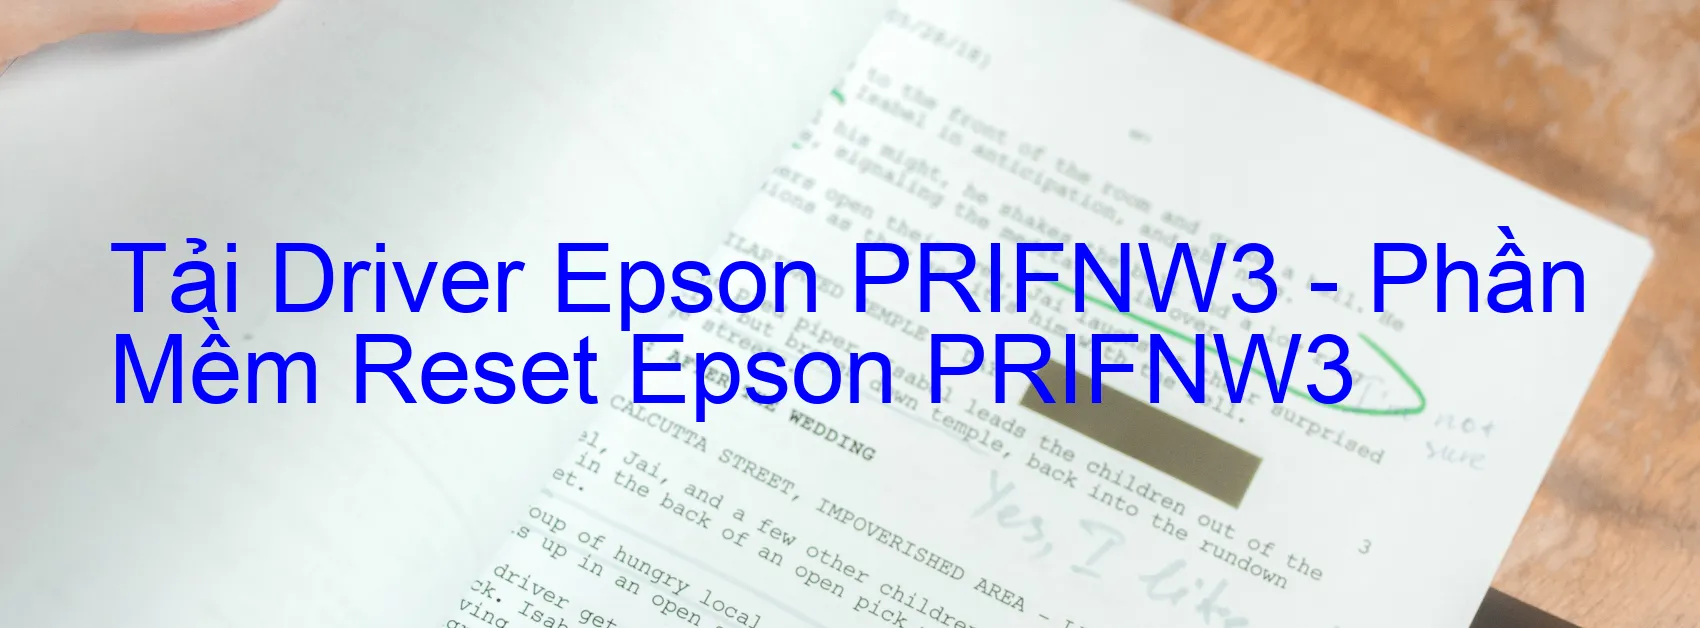 Driver Epson PRIFNW3, Phần Mềm Reset Epson PRIFNW3